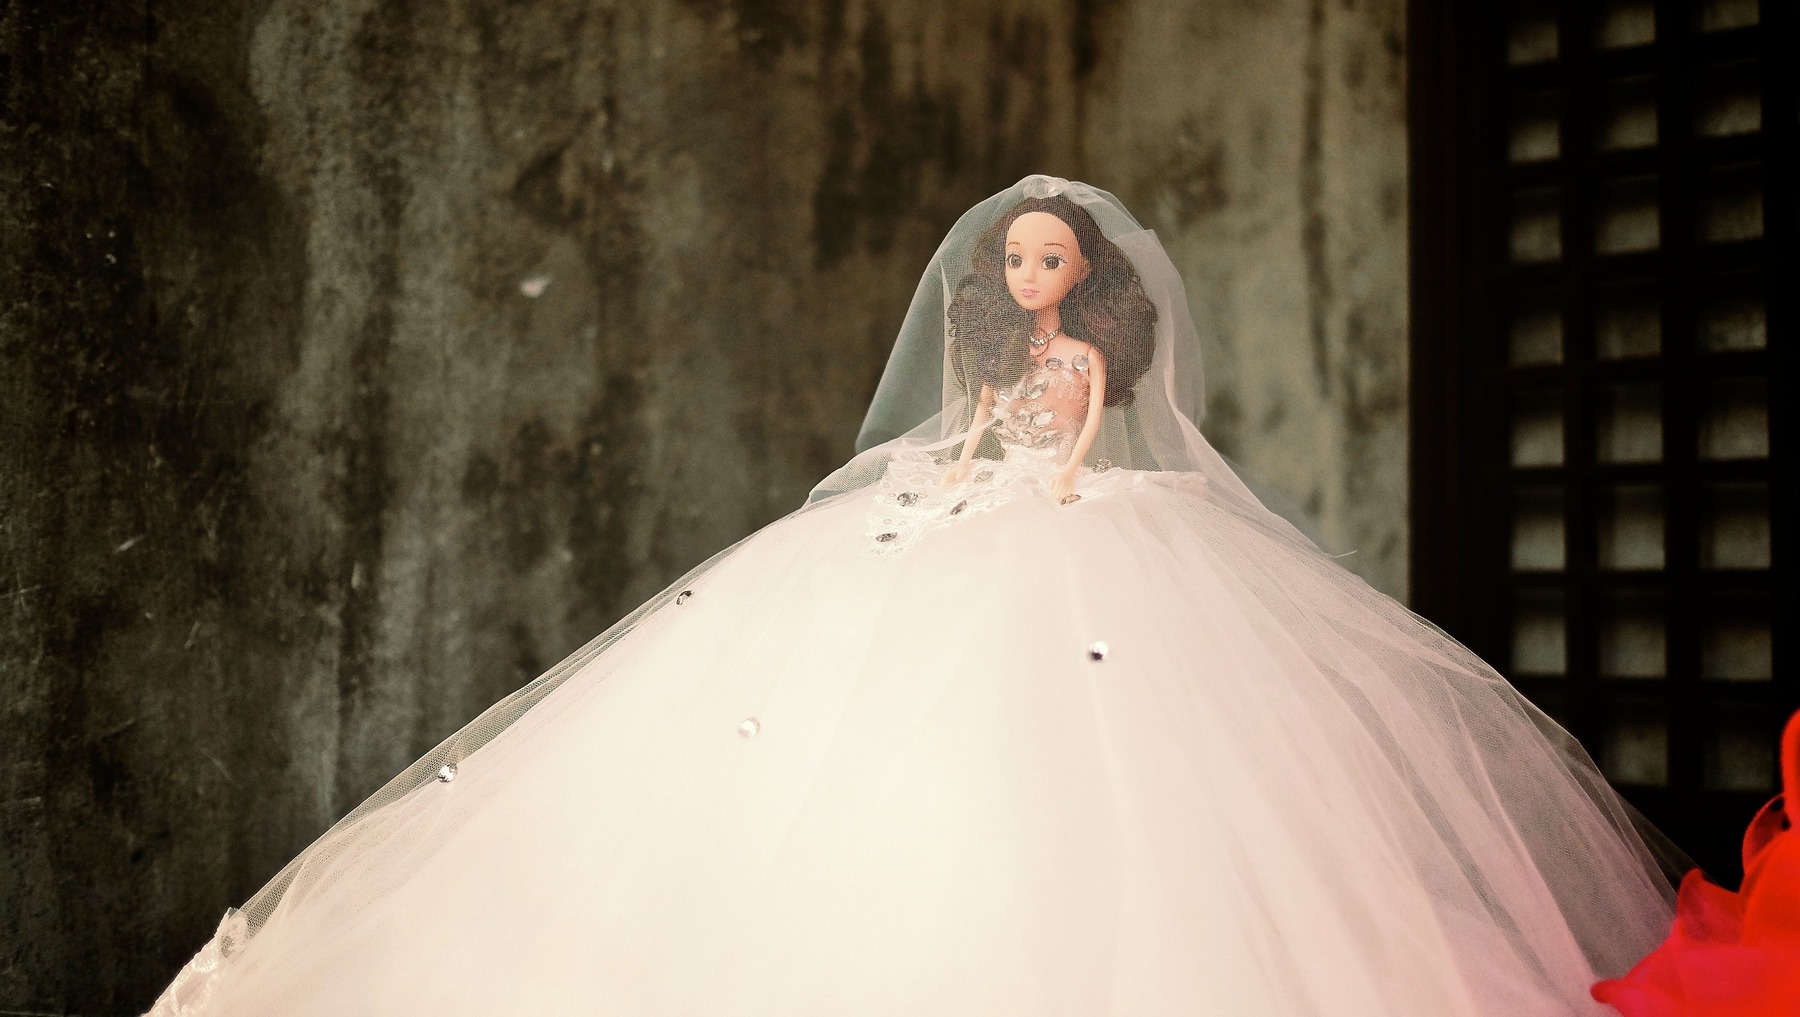 Barbiepuppe mit Hochzeitskleid und Schleier.